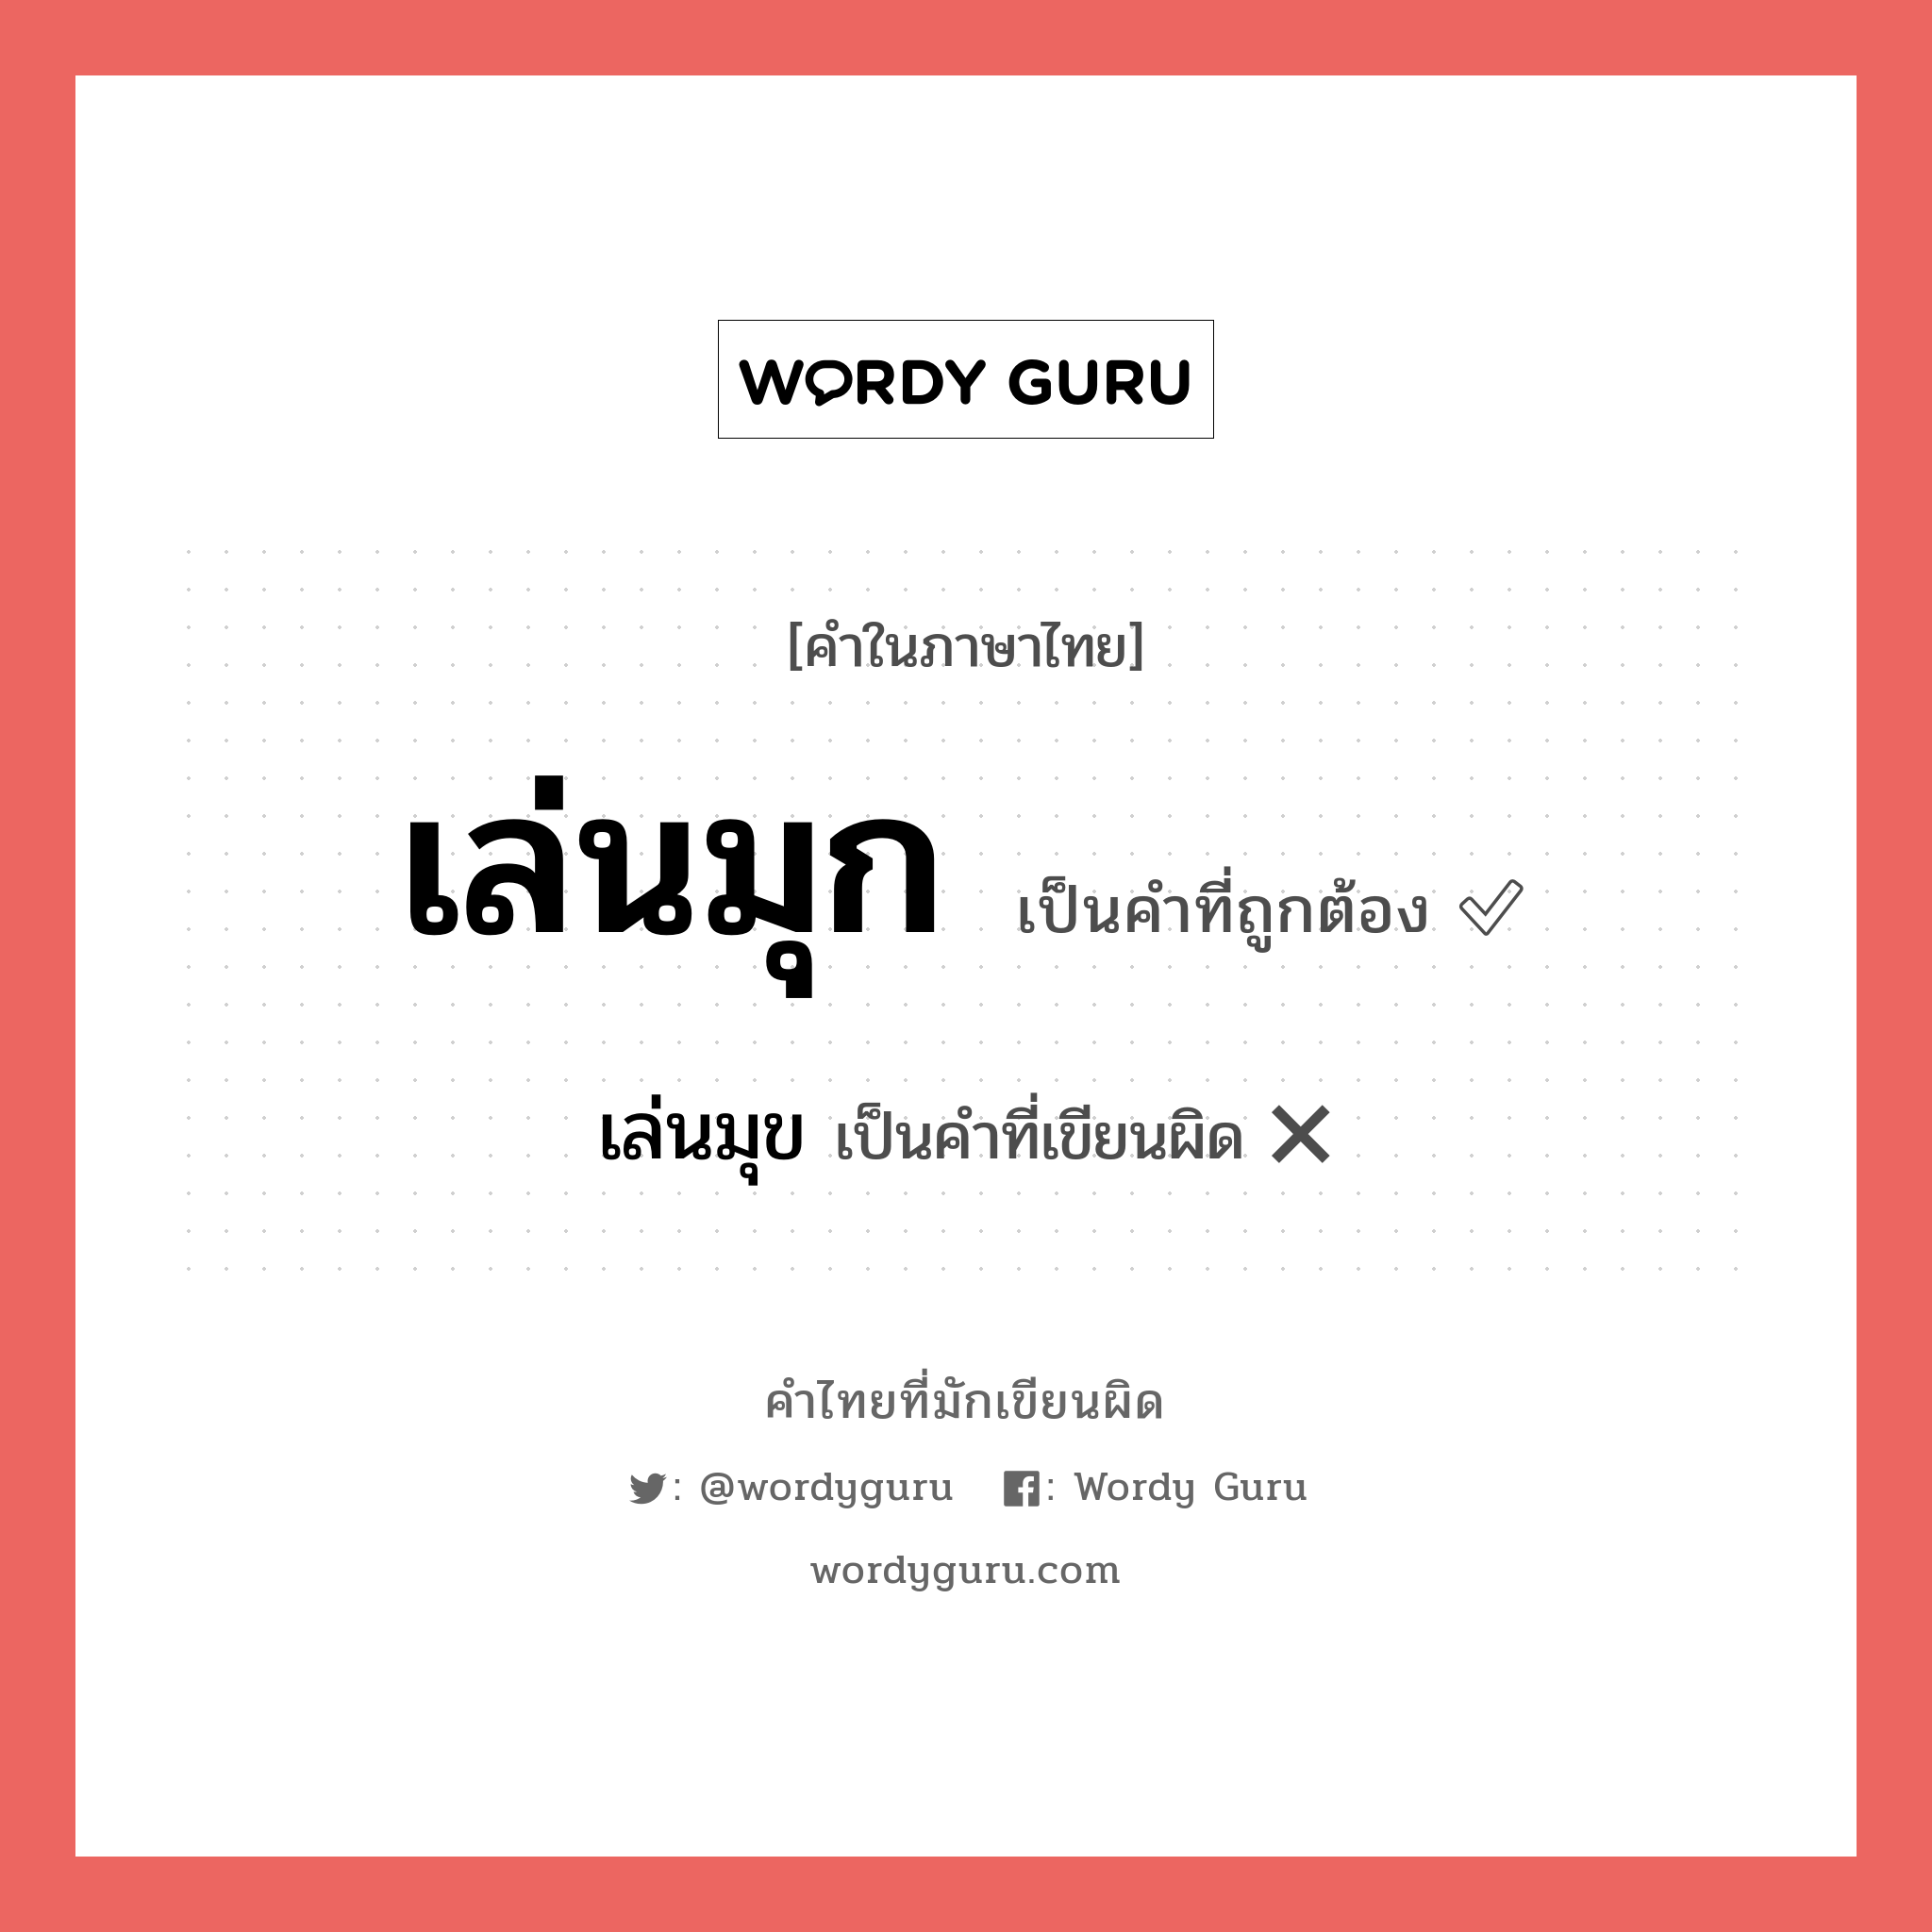 เล่นมุก หรือ เล่นมุข คำไหนเขียนถูก?, คำในภาษาไทยที่มักเขียนผิด เล่นมุก คำที่ผิด ❌ เล่นมุข